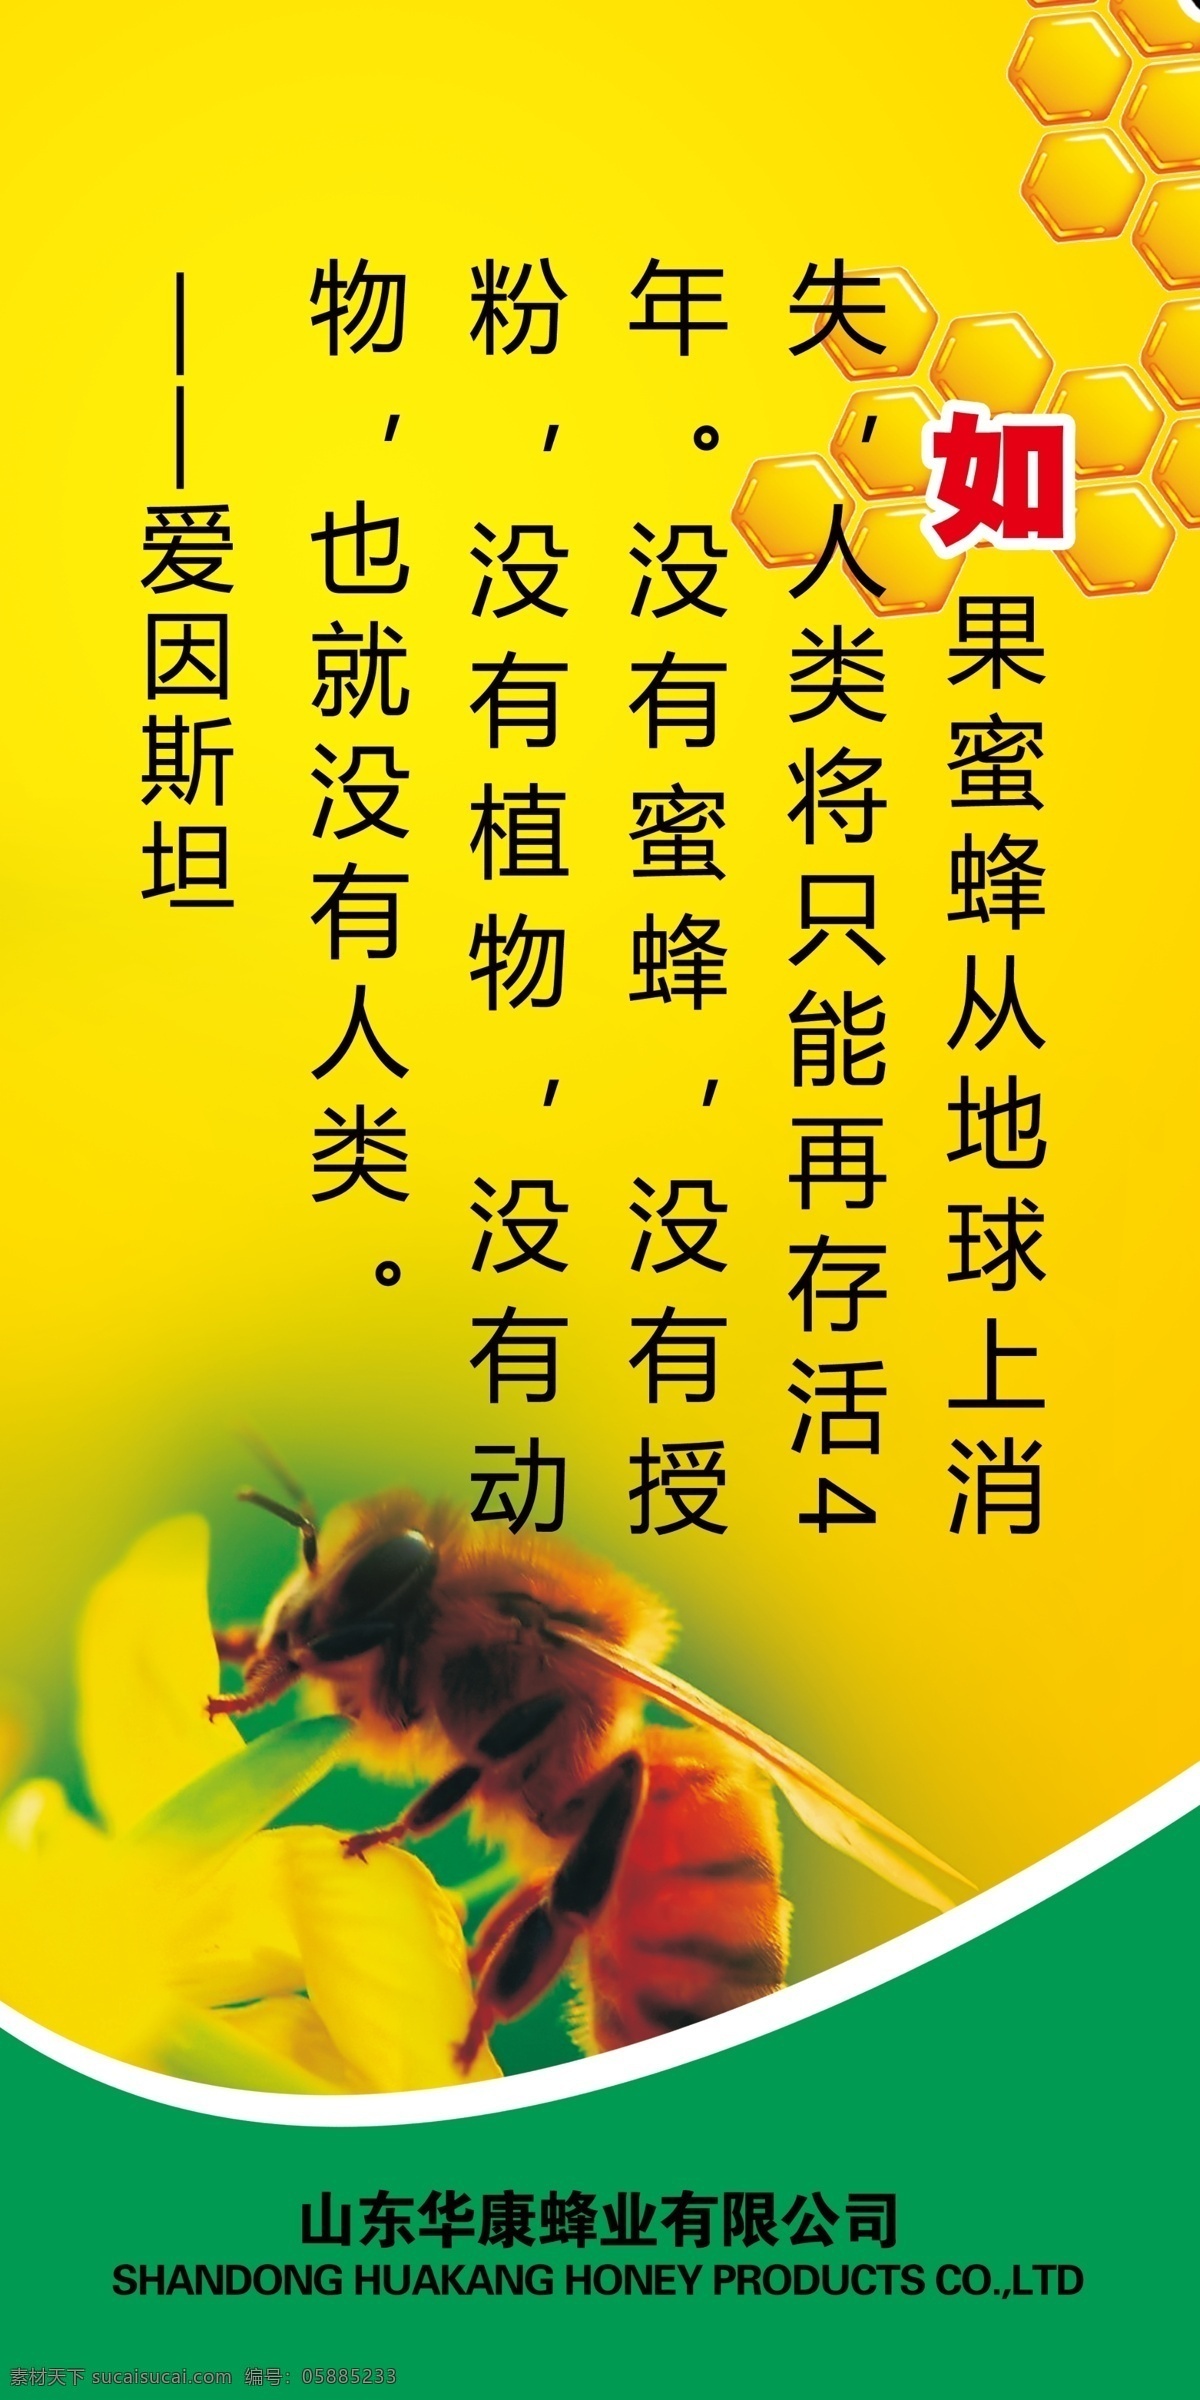 蜂蜜版面 洋槐蜜 嗡嗡乐 蜂蜜展板 户外广告 展板模板